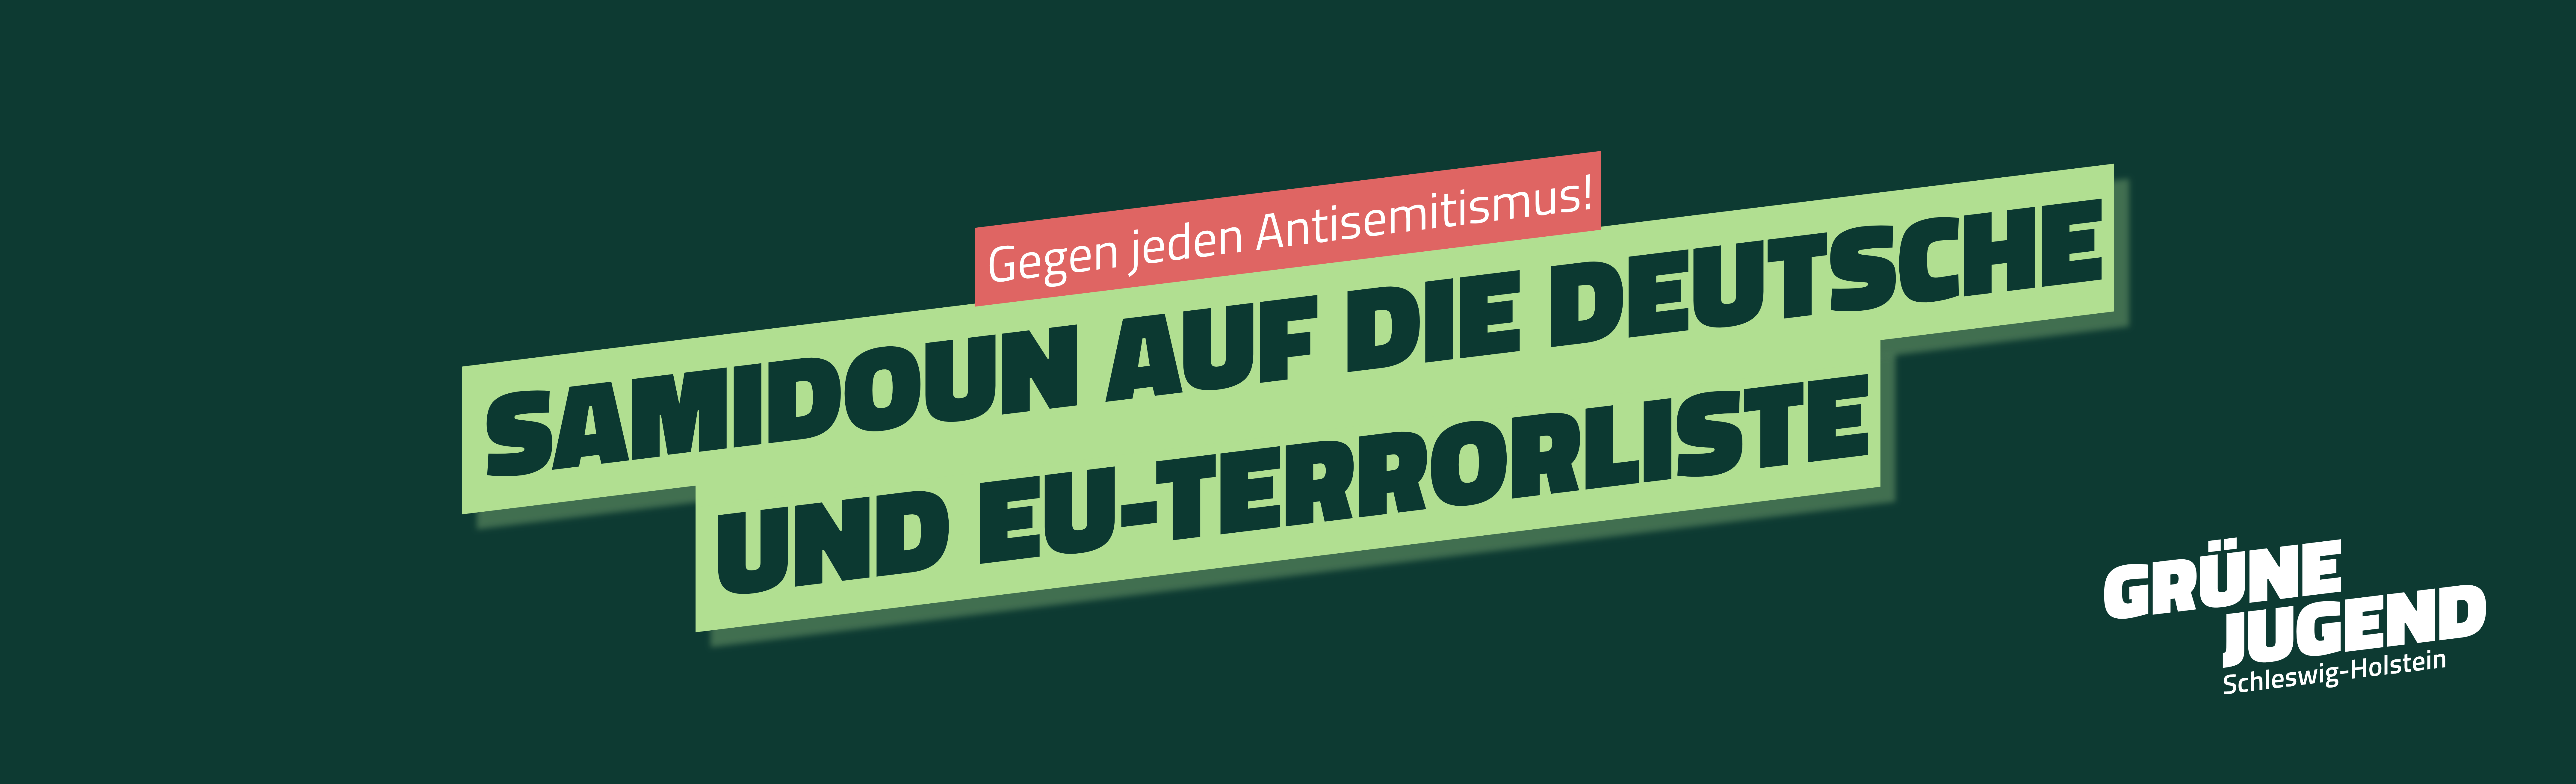 Gegen jeden Antisemitismus! Samidoun auf die deutsche und EU-Terrorliste